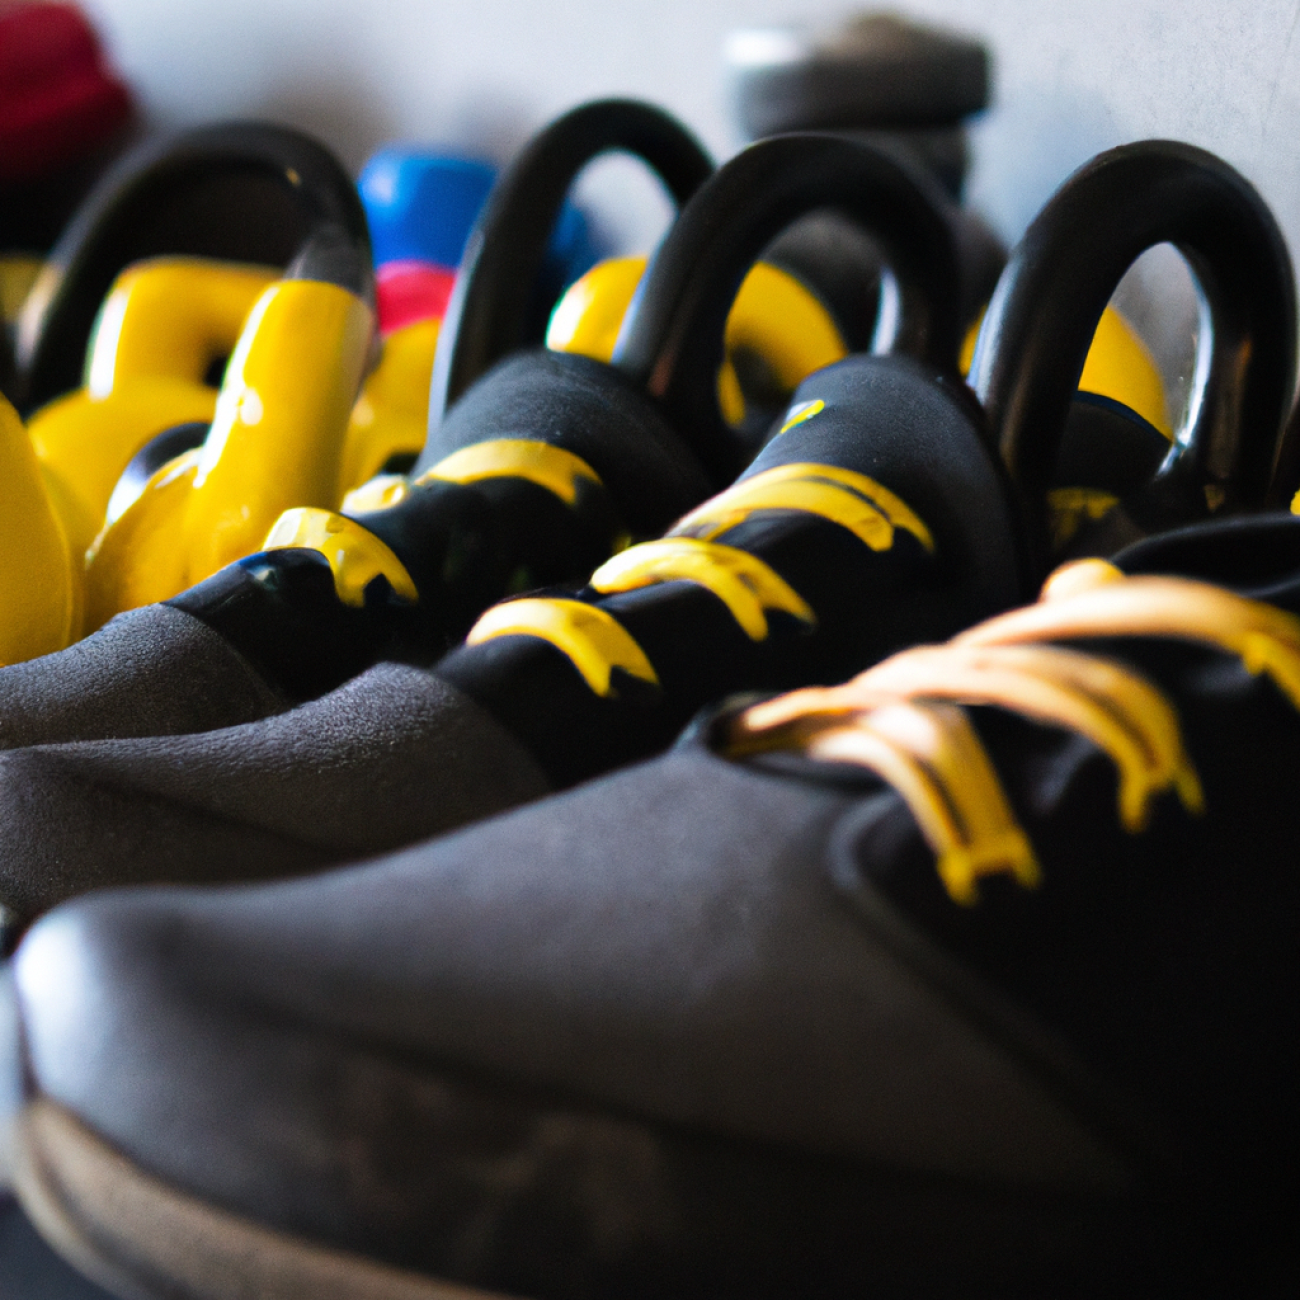 Tipy, jak najít ideální boty na crossfit: Přizpůsobení, materiál a konstrukce hrají roli